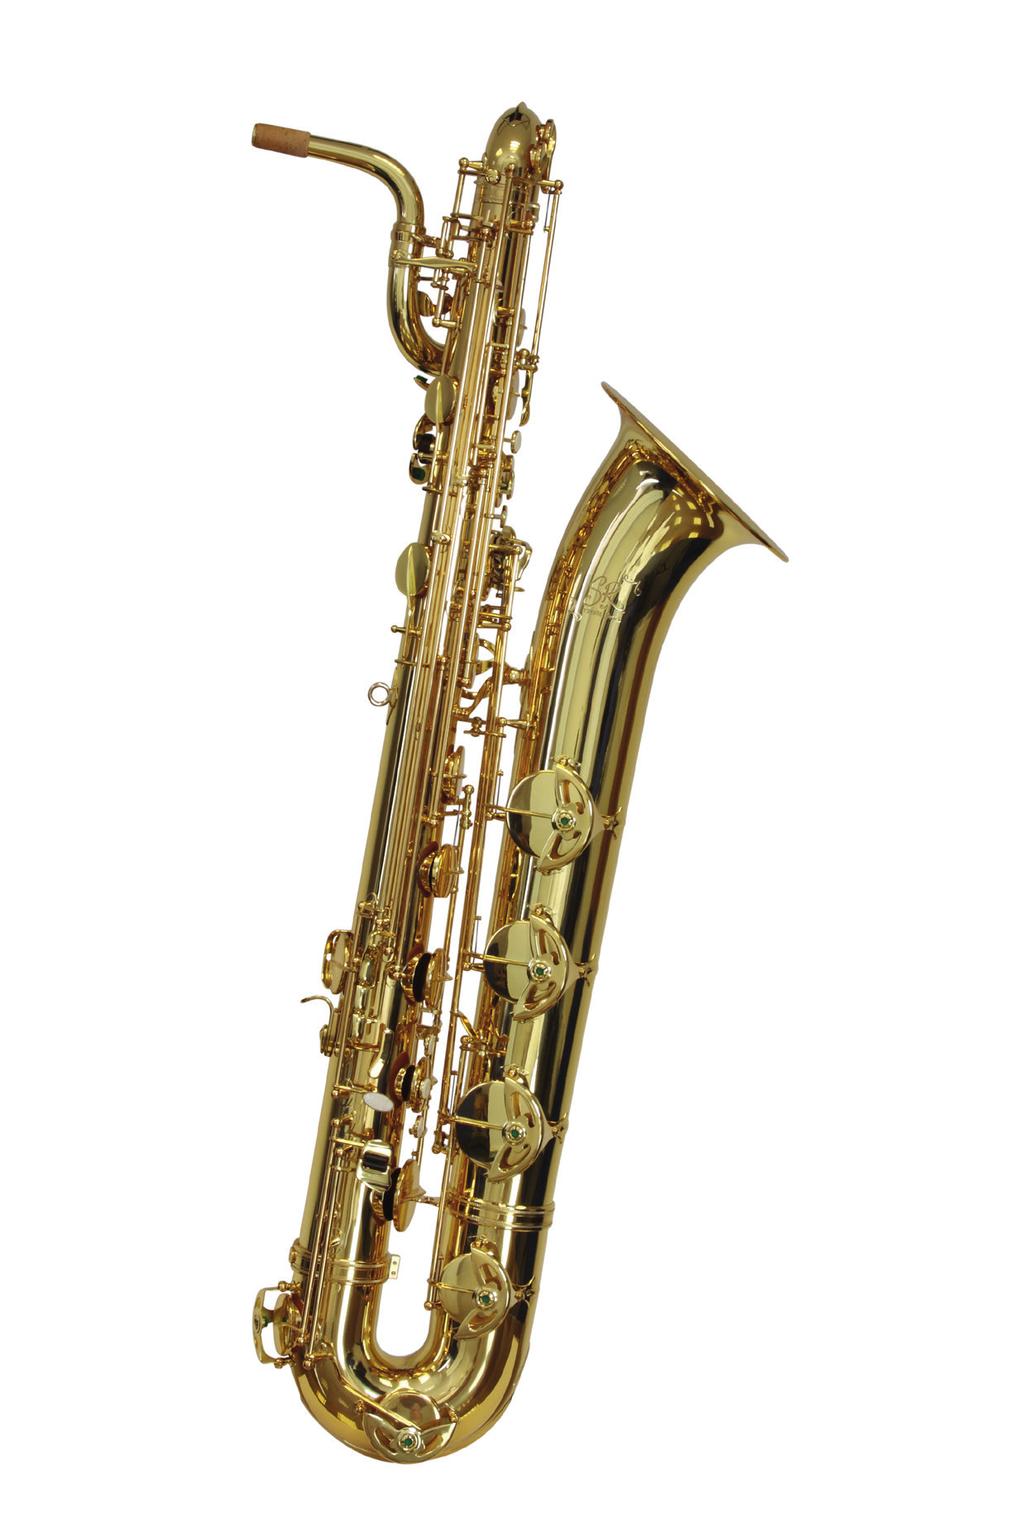 SR baritone saxophones 1. 2. 3.